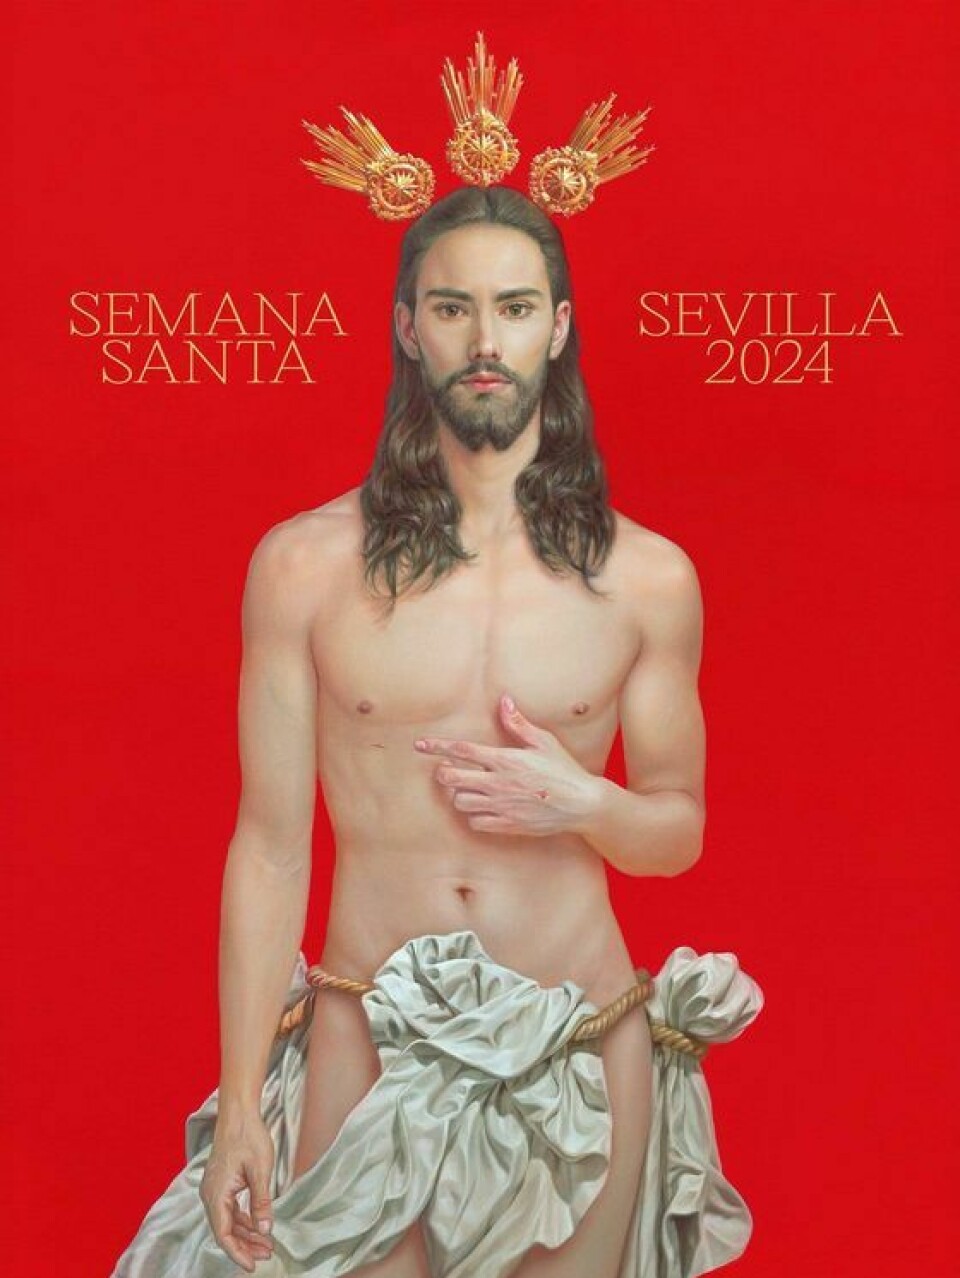 «Feminin og homoerotisk» er beskrivelsen mange kritikere bruker om plakaten til årets feiring av «Den stille uke» i den spanske byen Sevilla.